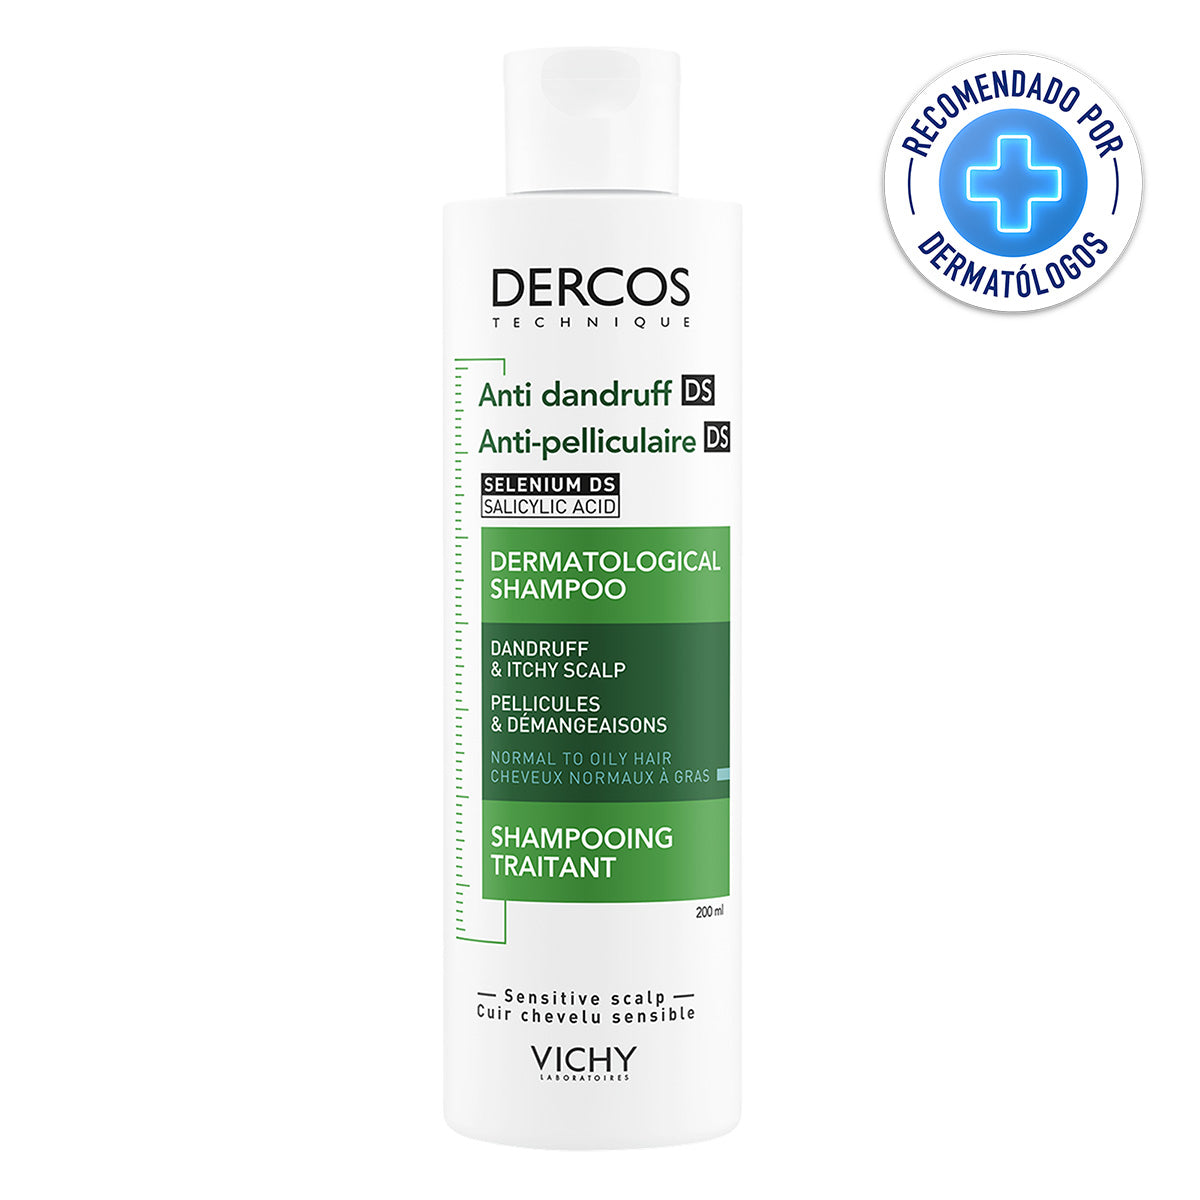 Vichy Dercos Shampoo Anti-Caspa Grasa, 200ml.